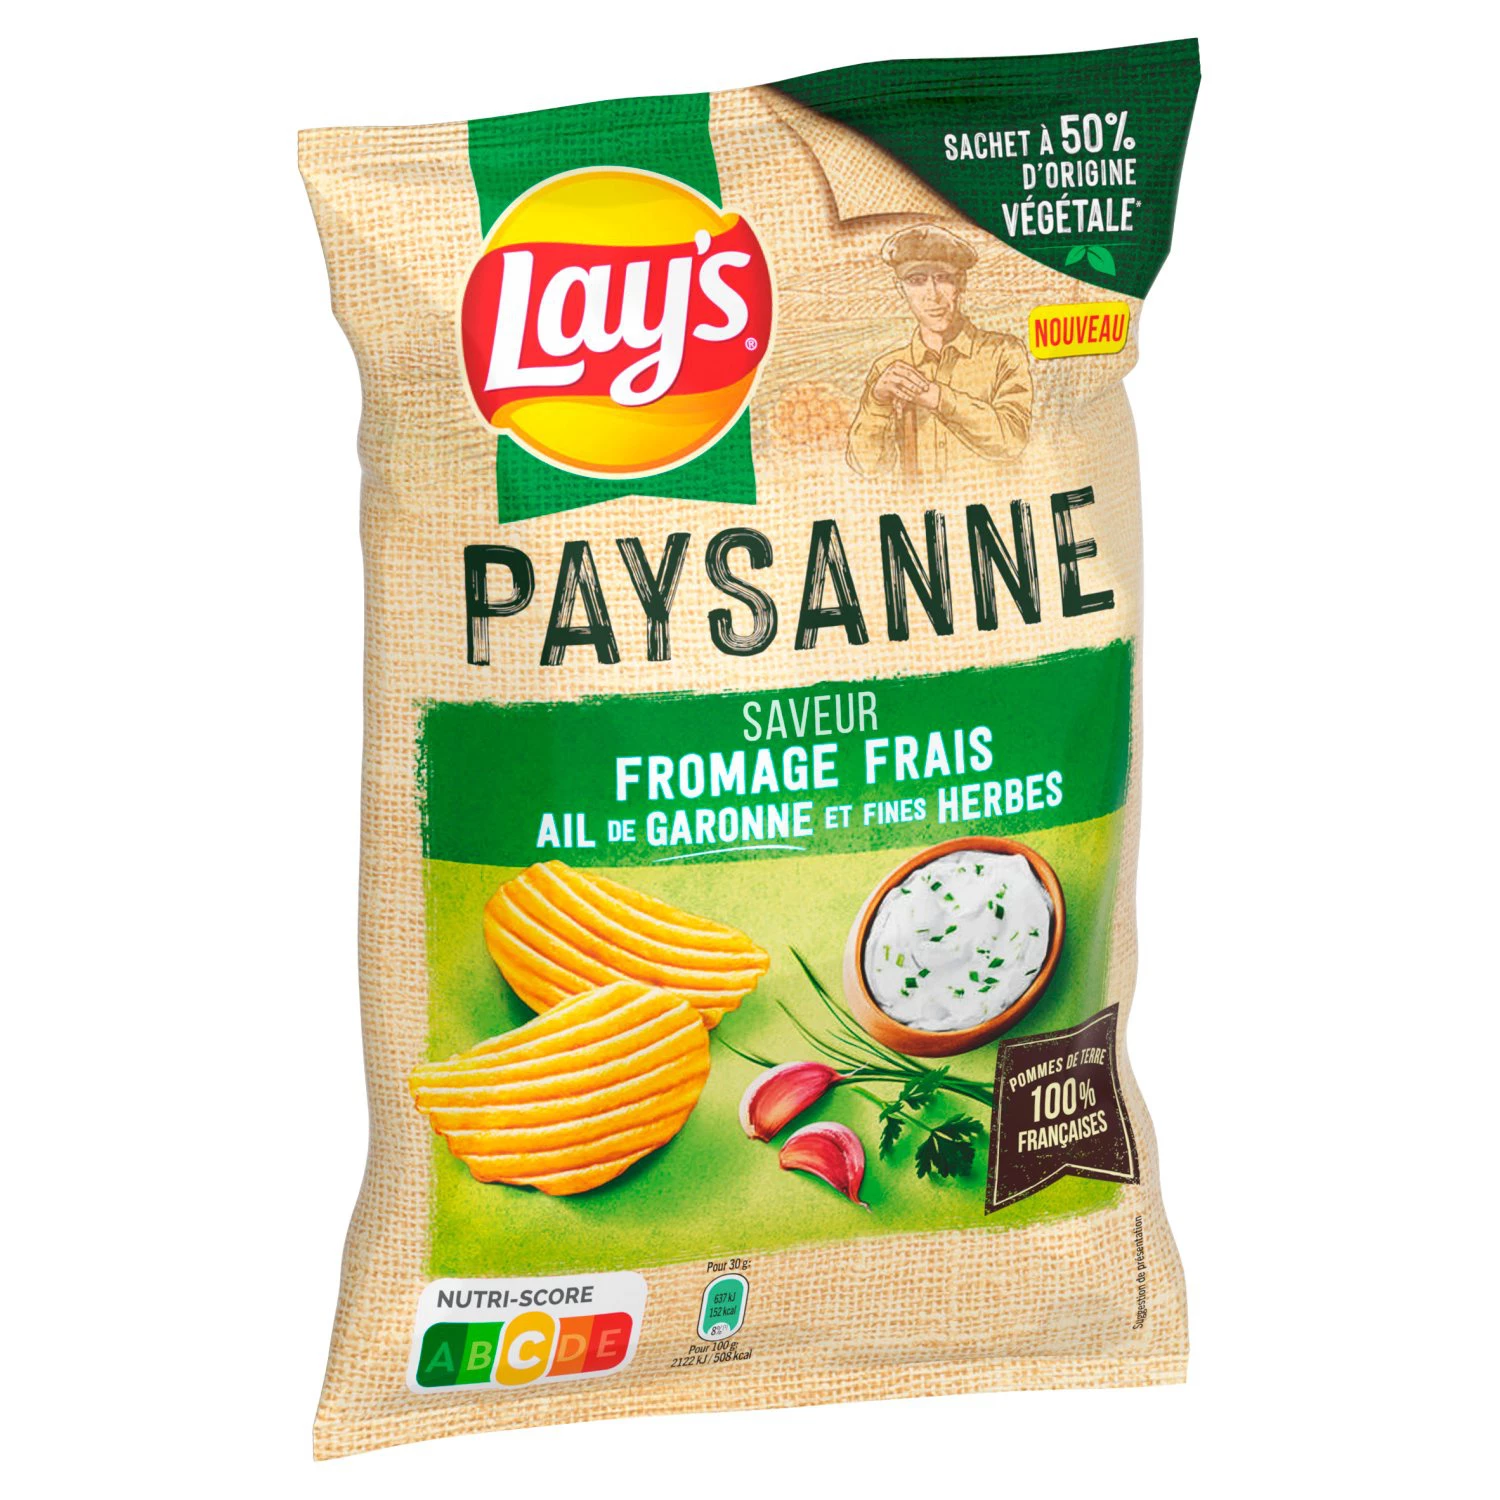 Chips Recette Paysanne Saveur Fromage frais, Ail de Garonne et fines herbes, 120g - LAY'S